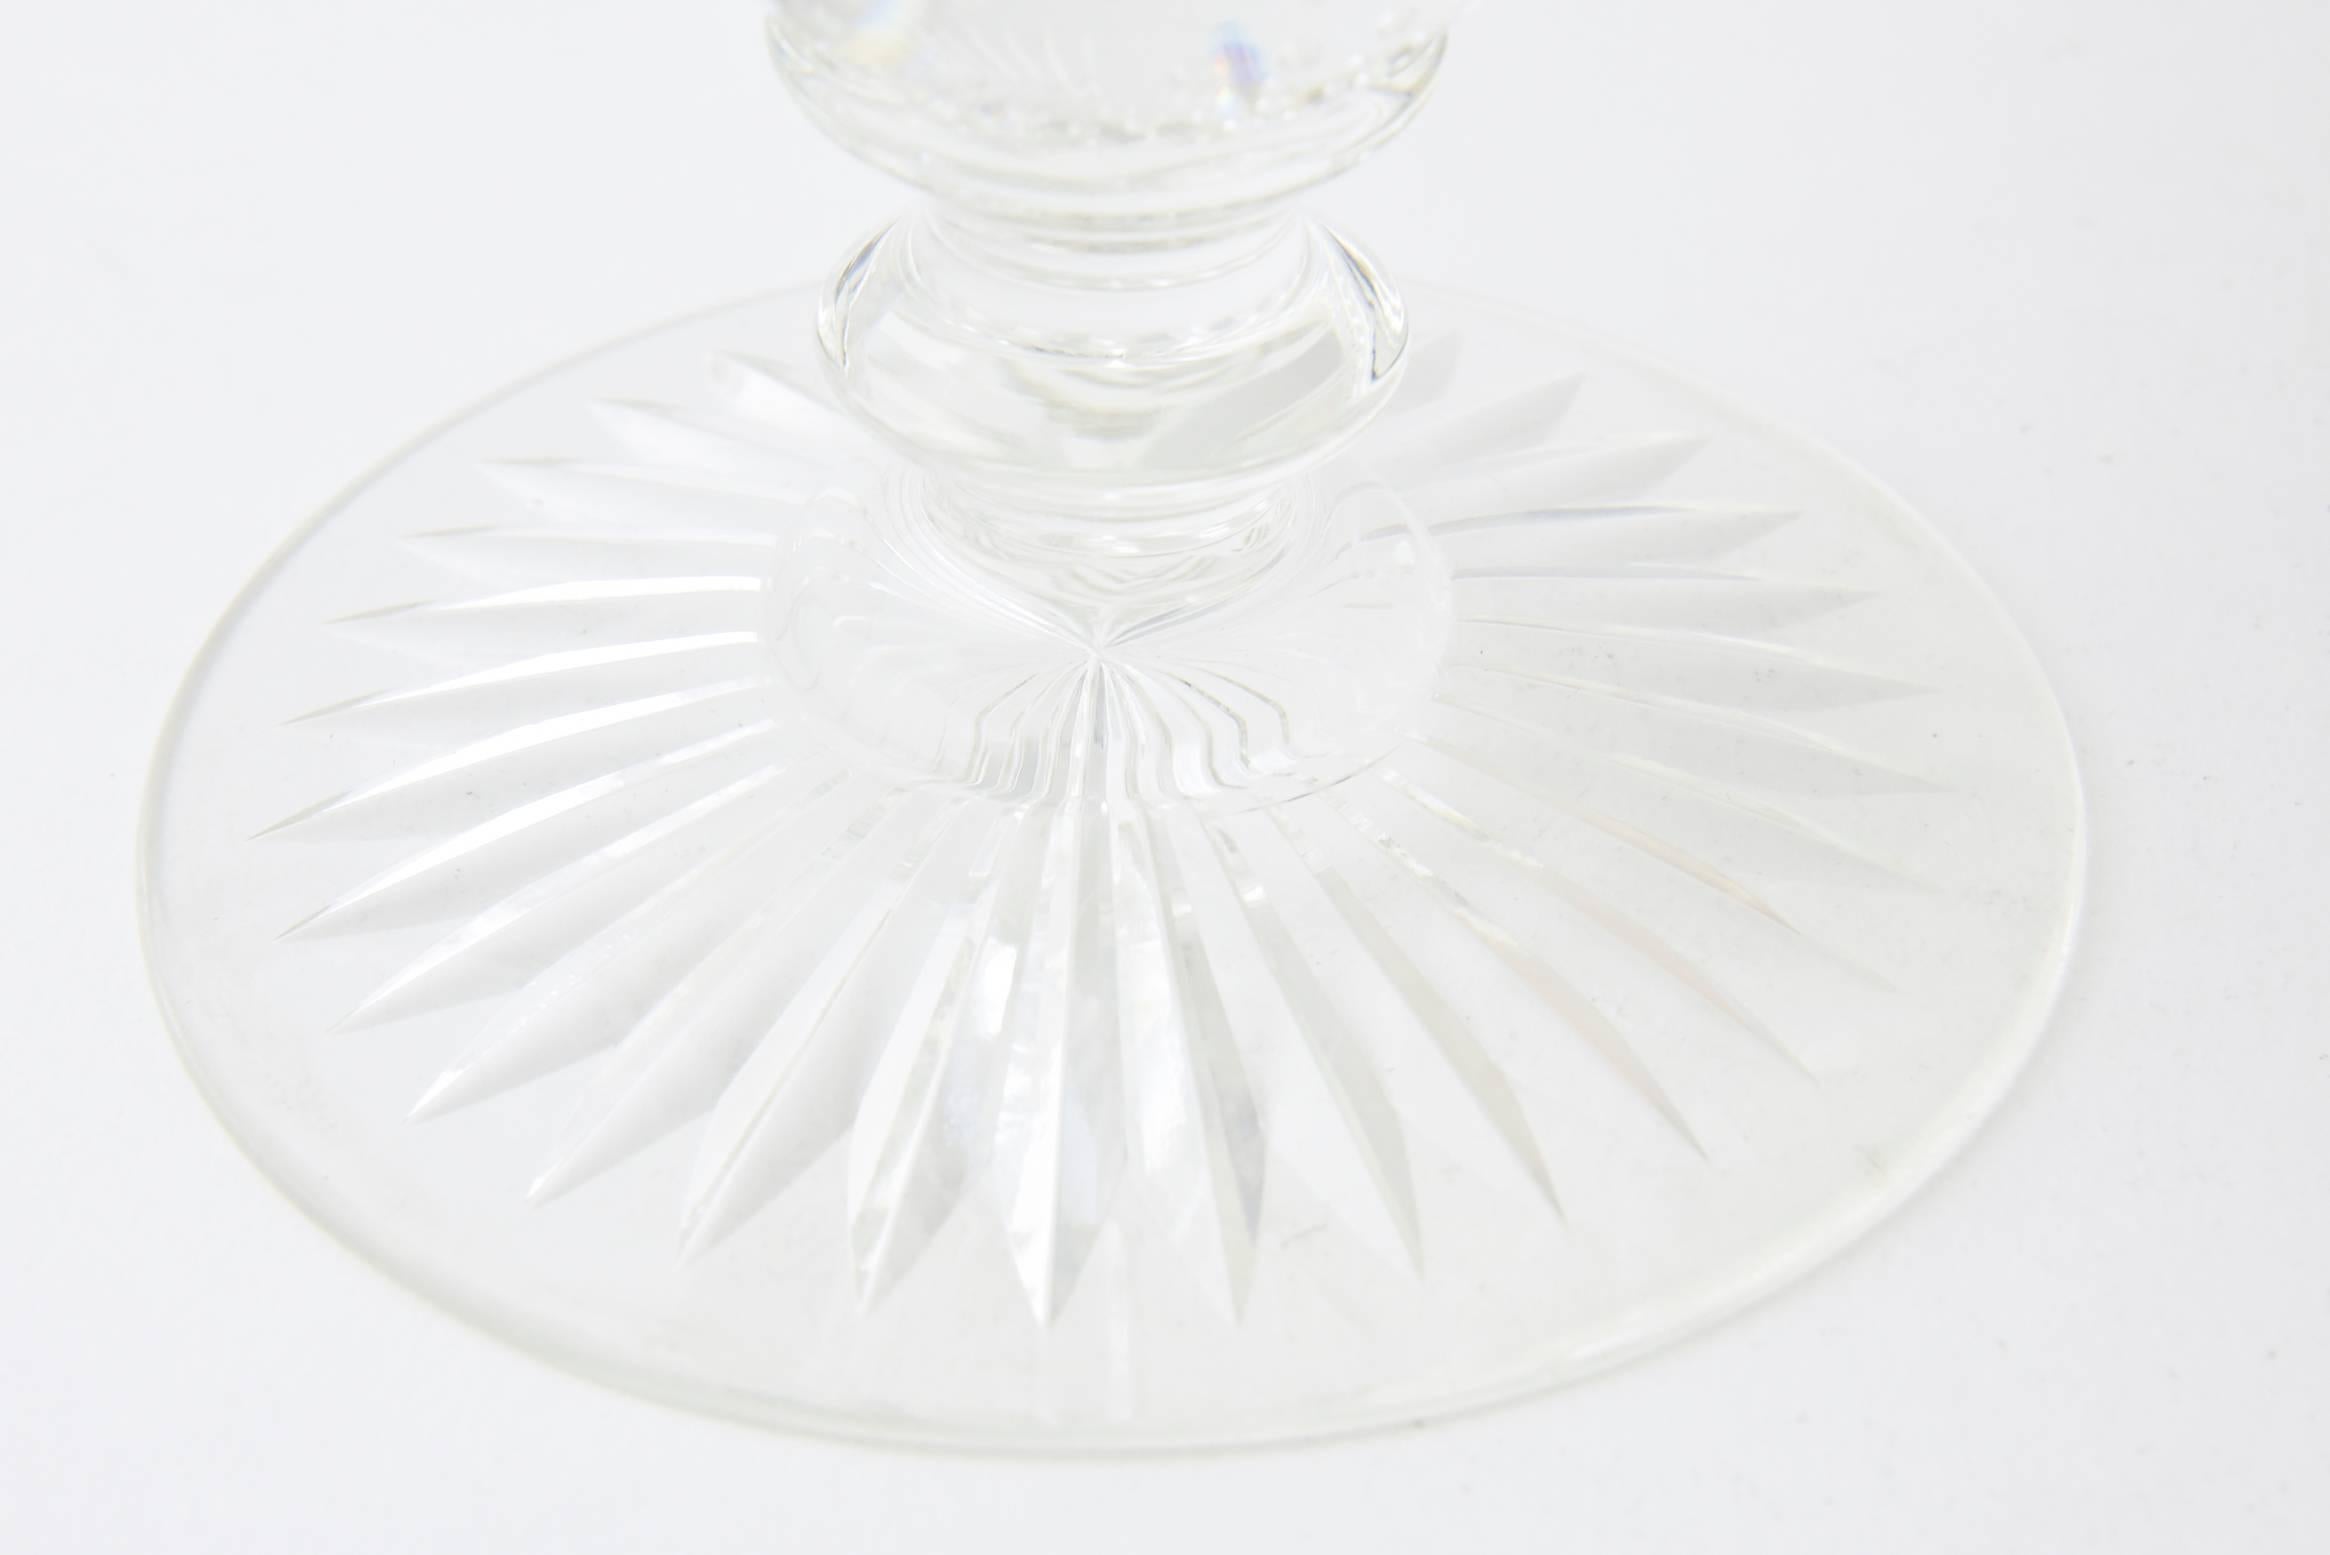 Vase en forme de calice à deux pointes présentant un profond motif géométrique hachuré ainsi que la base à bulles contrôlées caractéristique de la société. Date des années 1930-1950 environ. Pas de marque de fabricant.